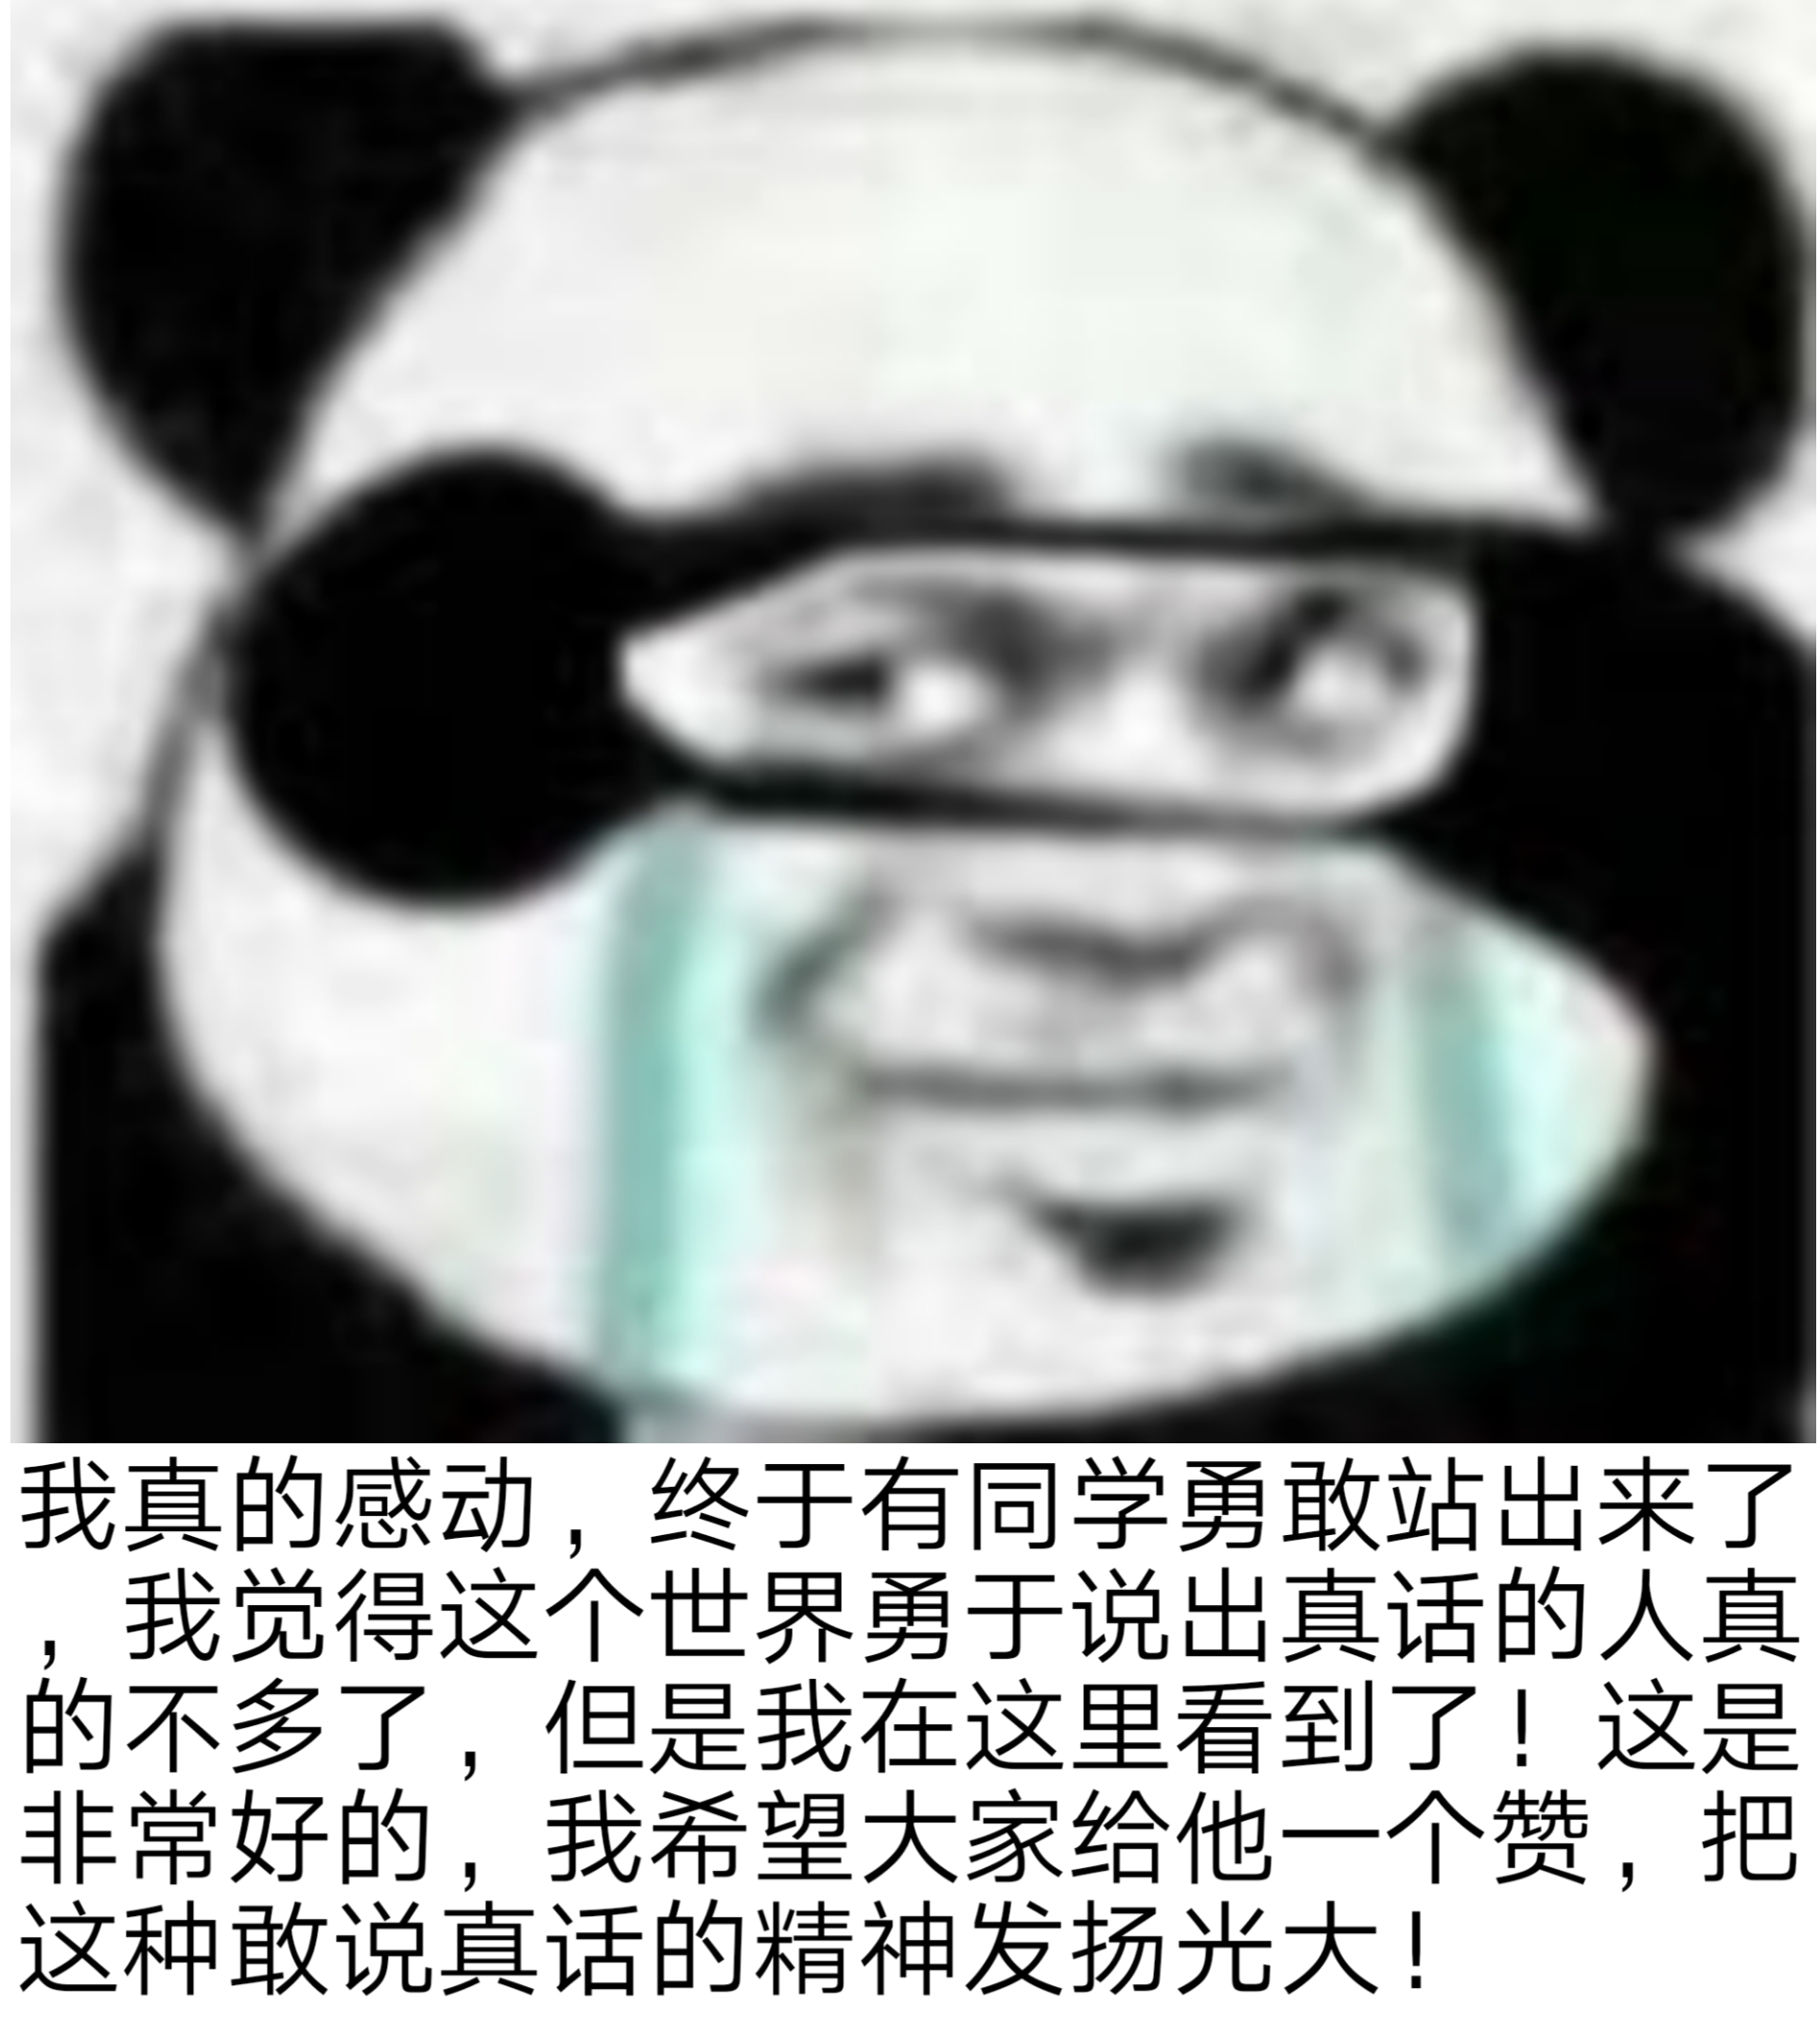 熊猫表情包 沙雕/搞笑/gif动图/微信表情/ - 高清图片，堆糖，美图壁纸兴趣社区